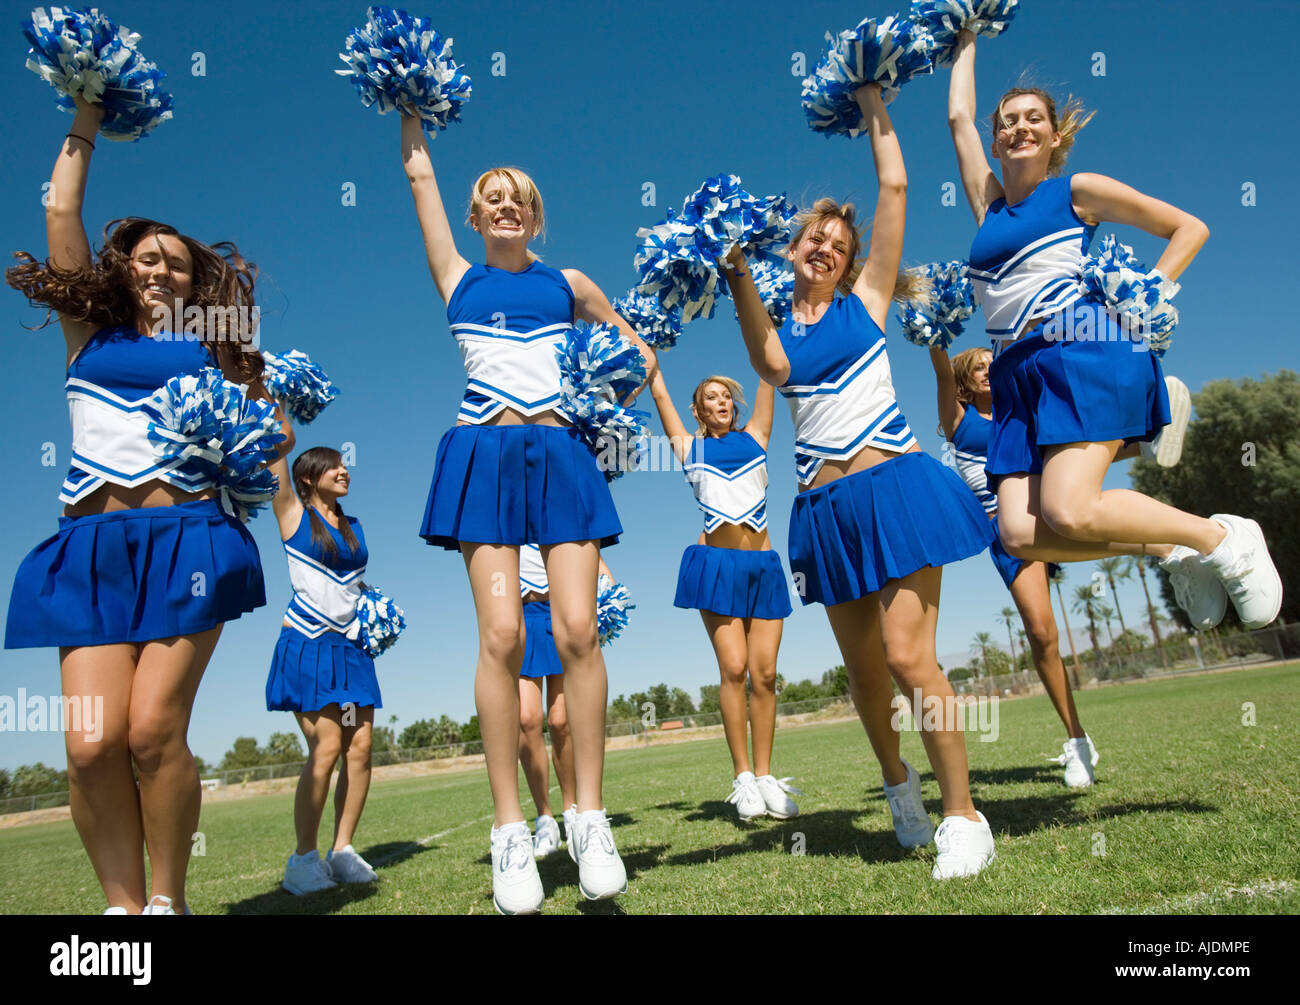 Cheerleader in orange uniform with pompons jumps Vector Image